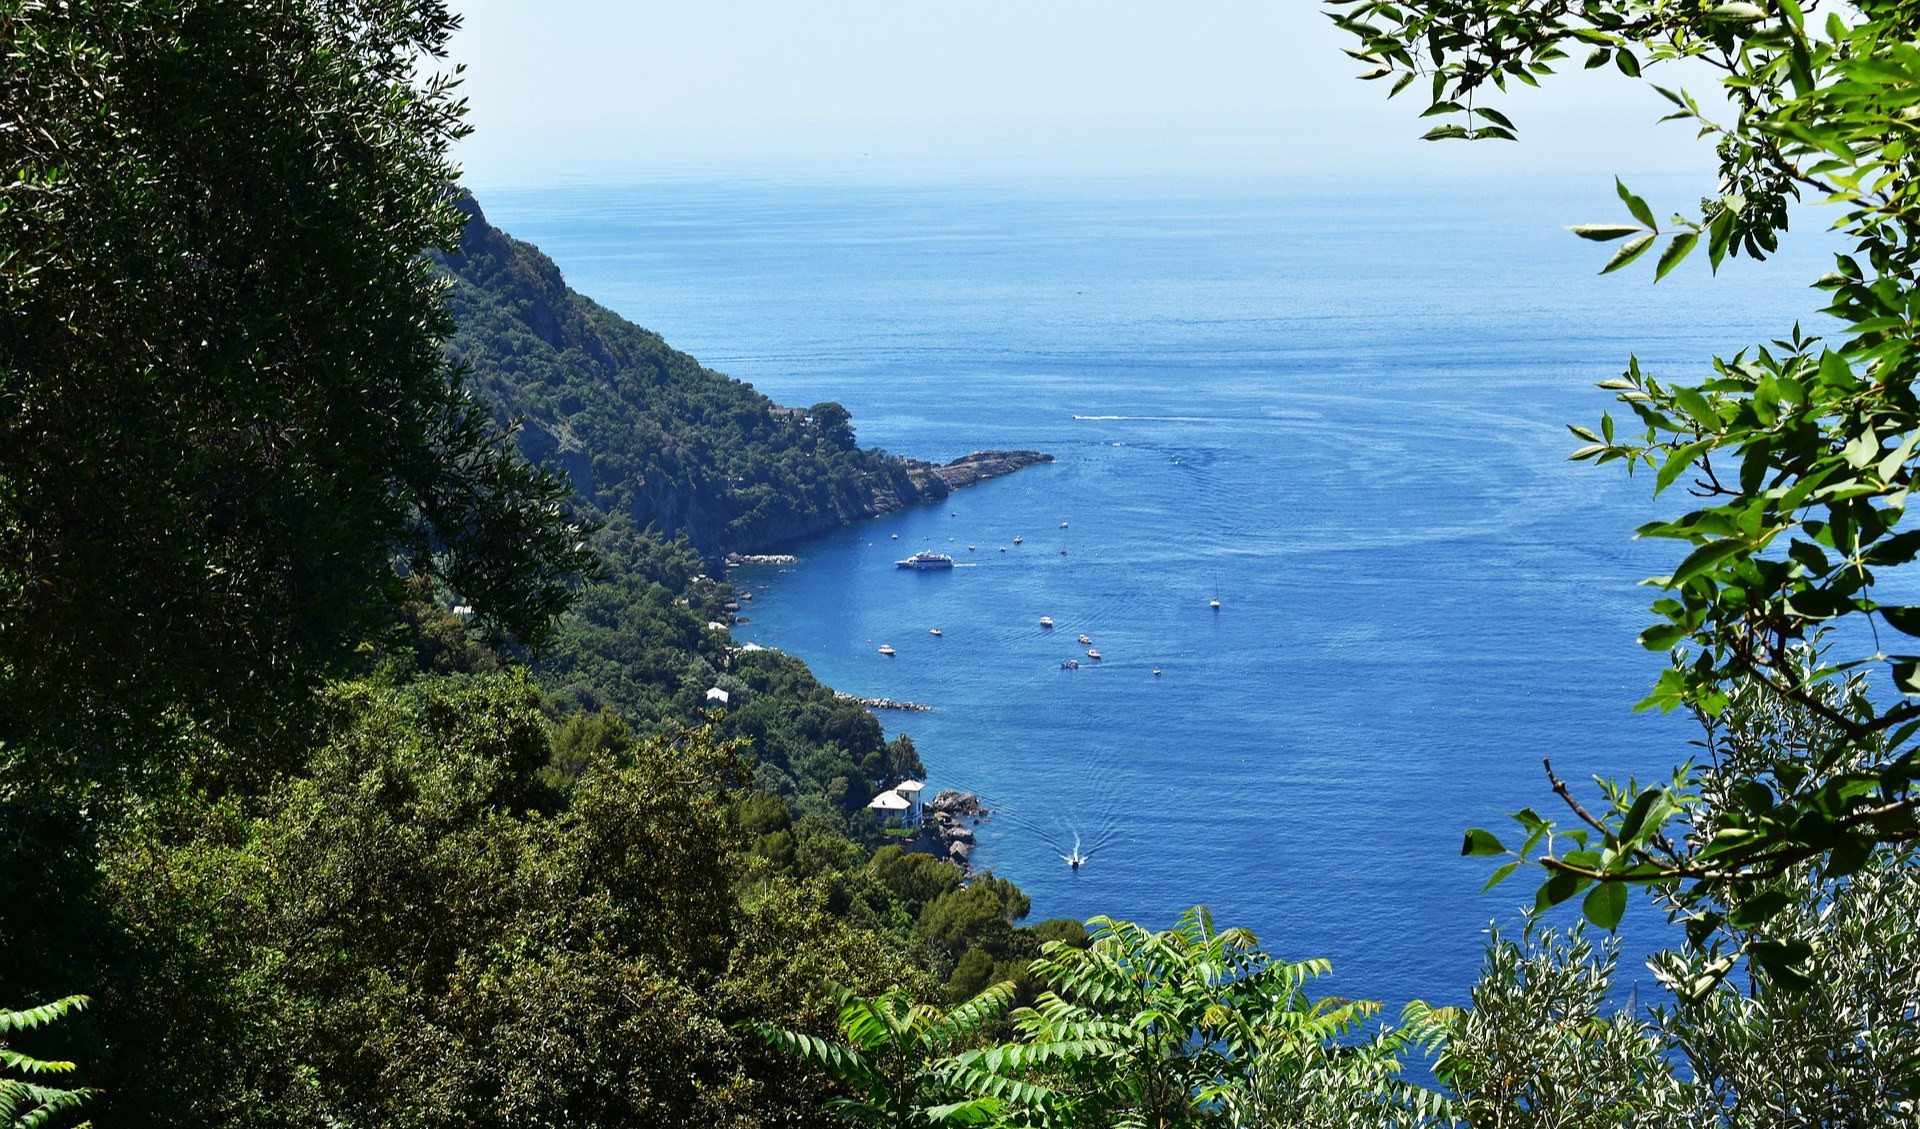 Meteo in Liguria, tempo sereno e temperature basse nell'entroterra